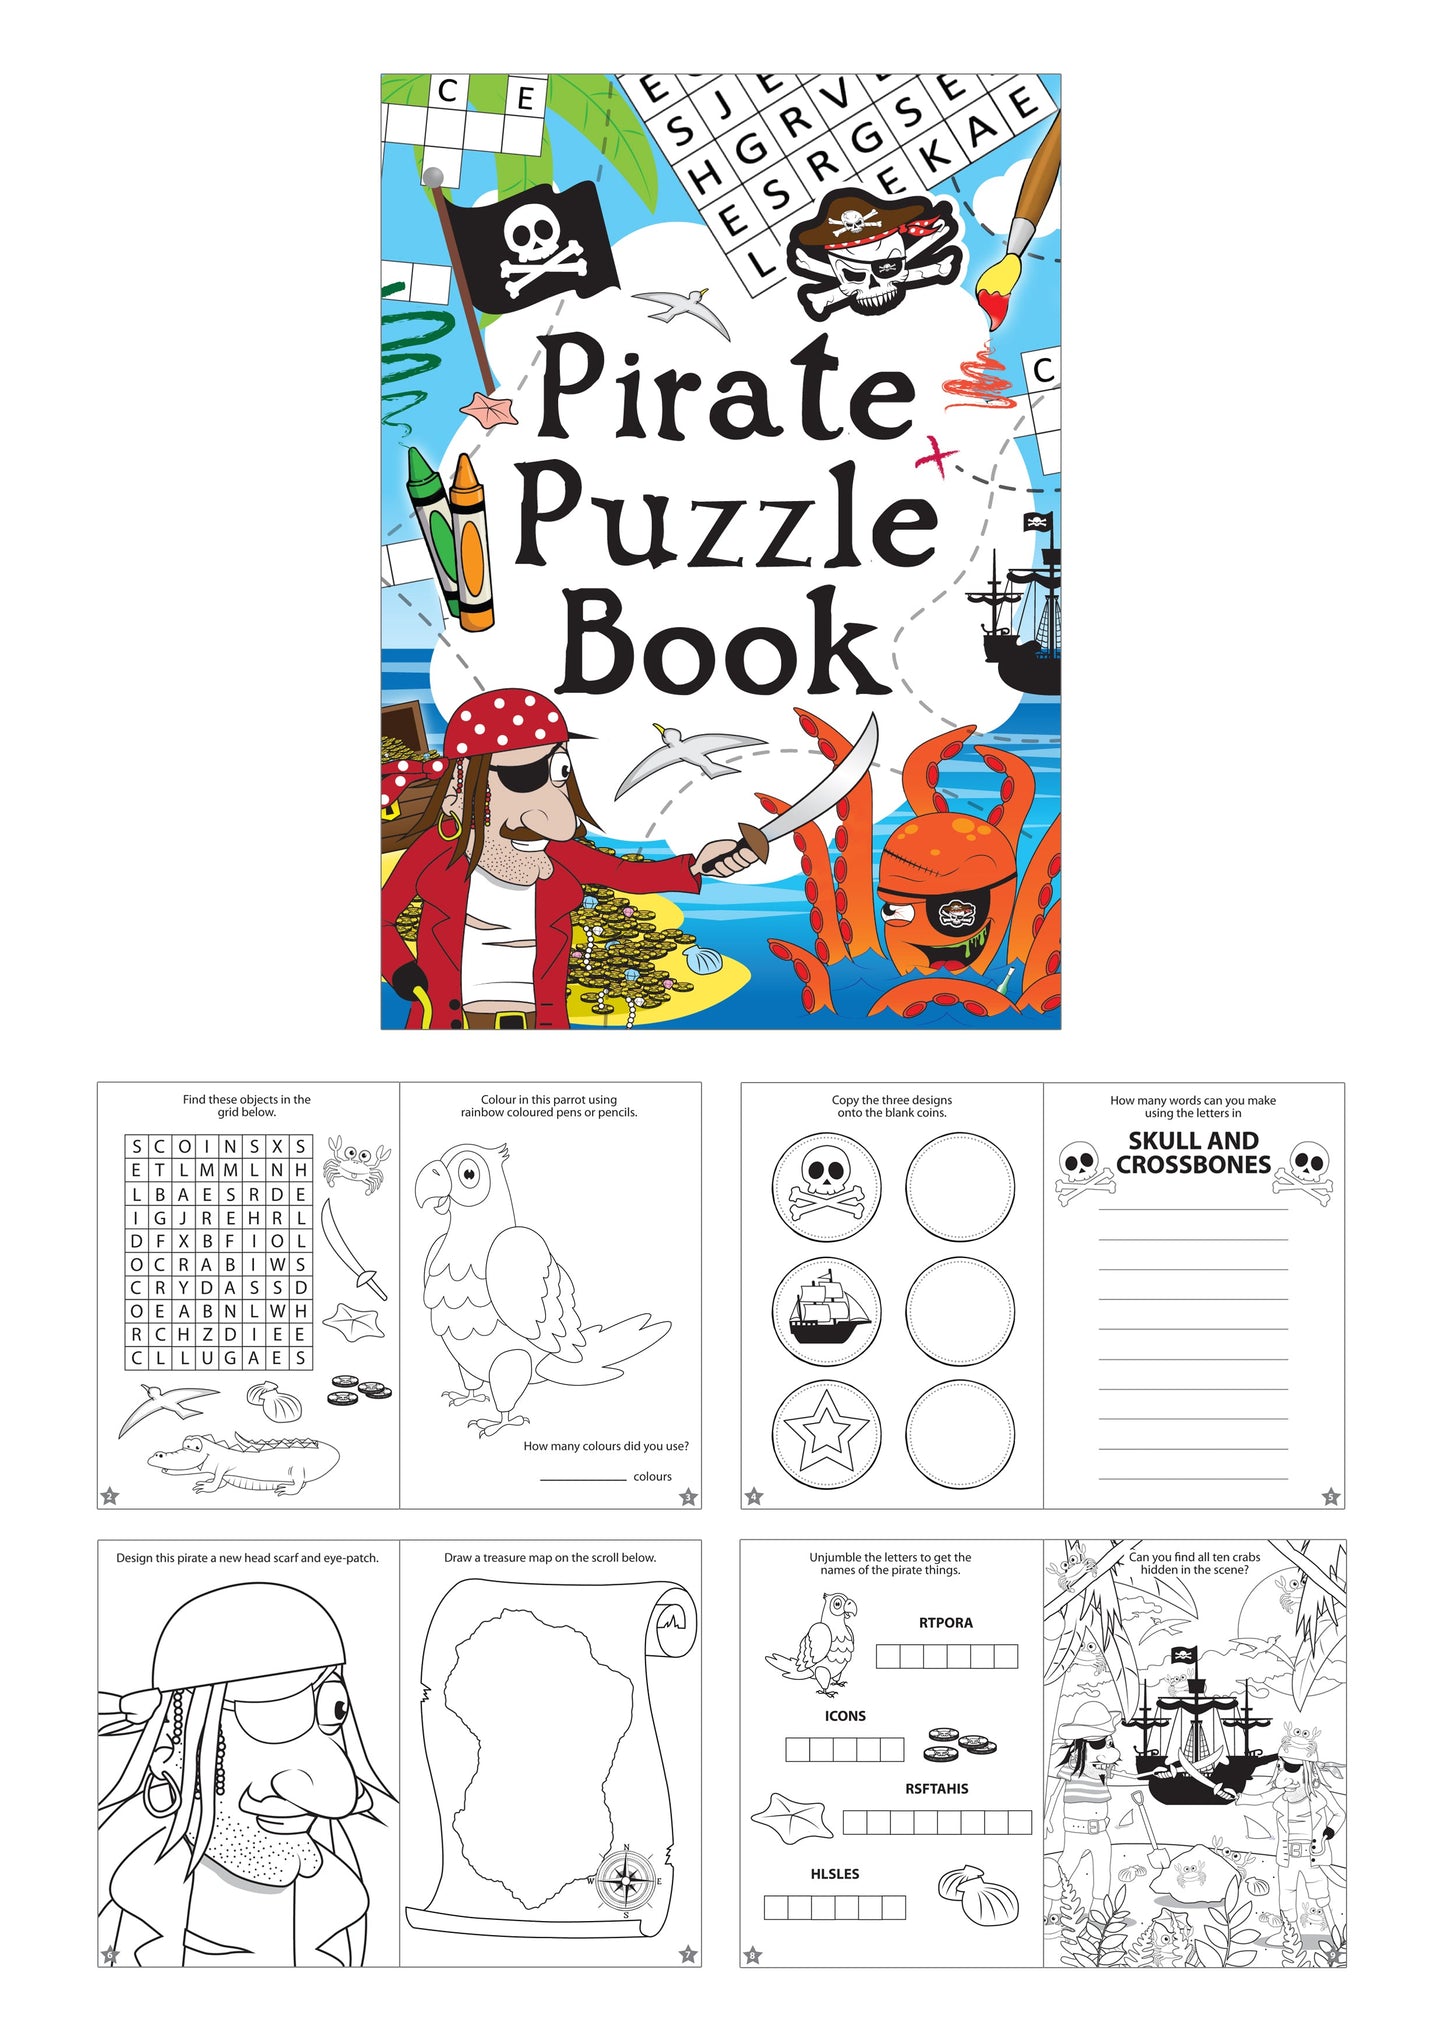 48 Mini Pirate Puzzle Books